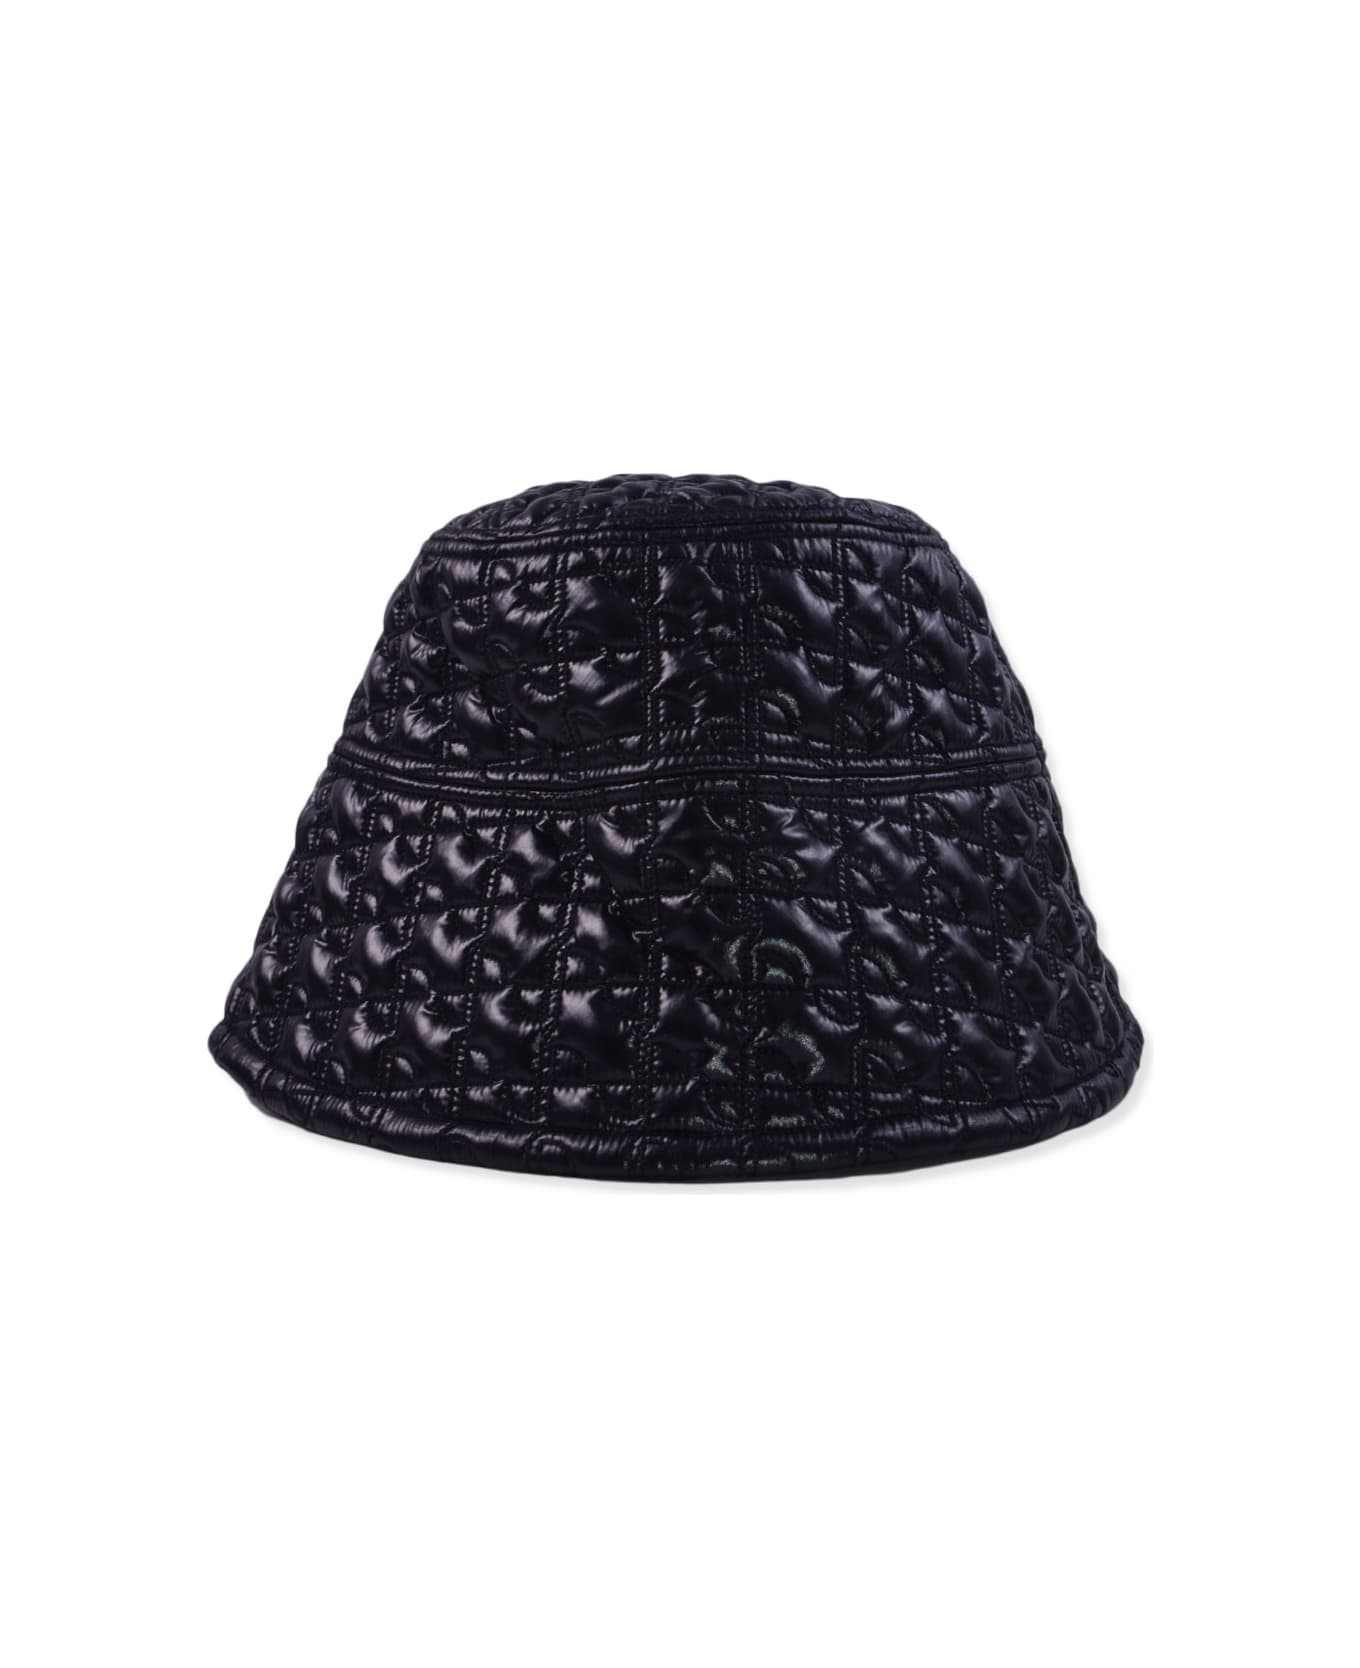 Patou Hat - BLACK